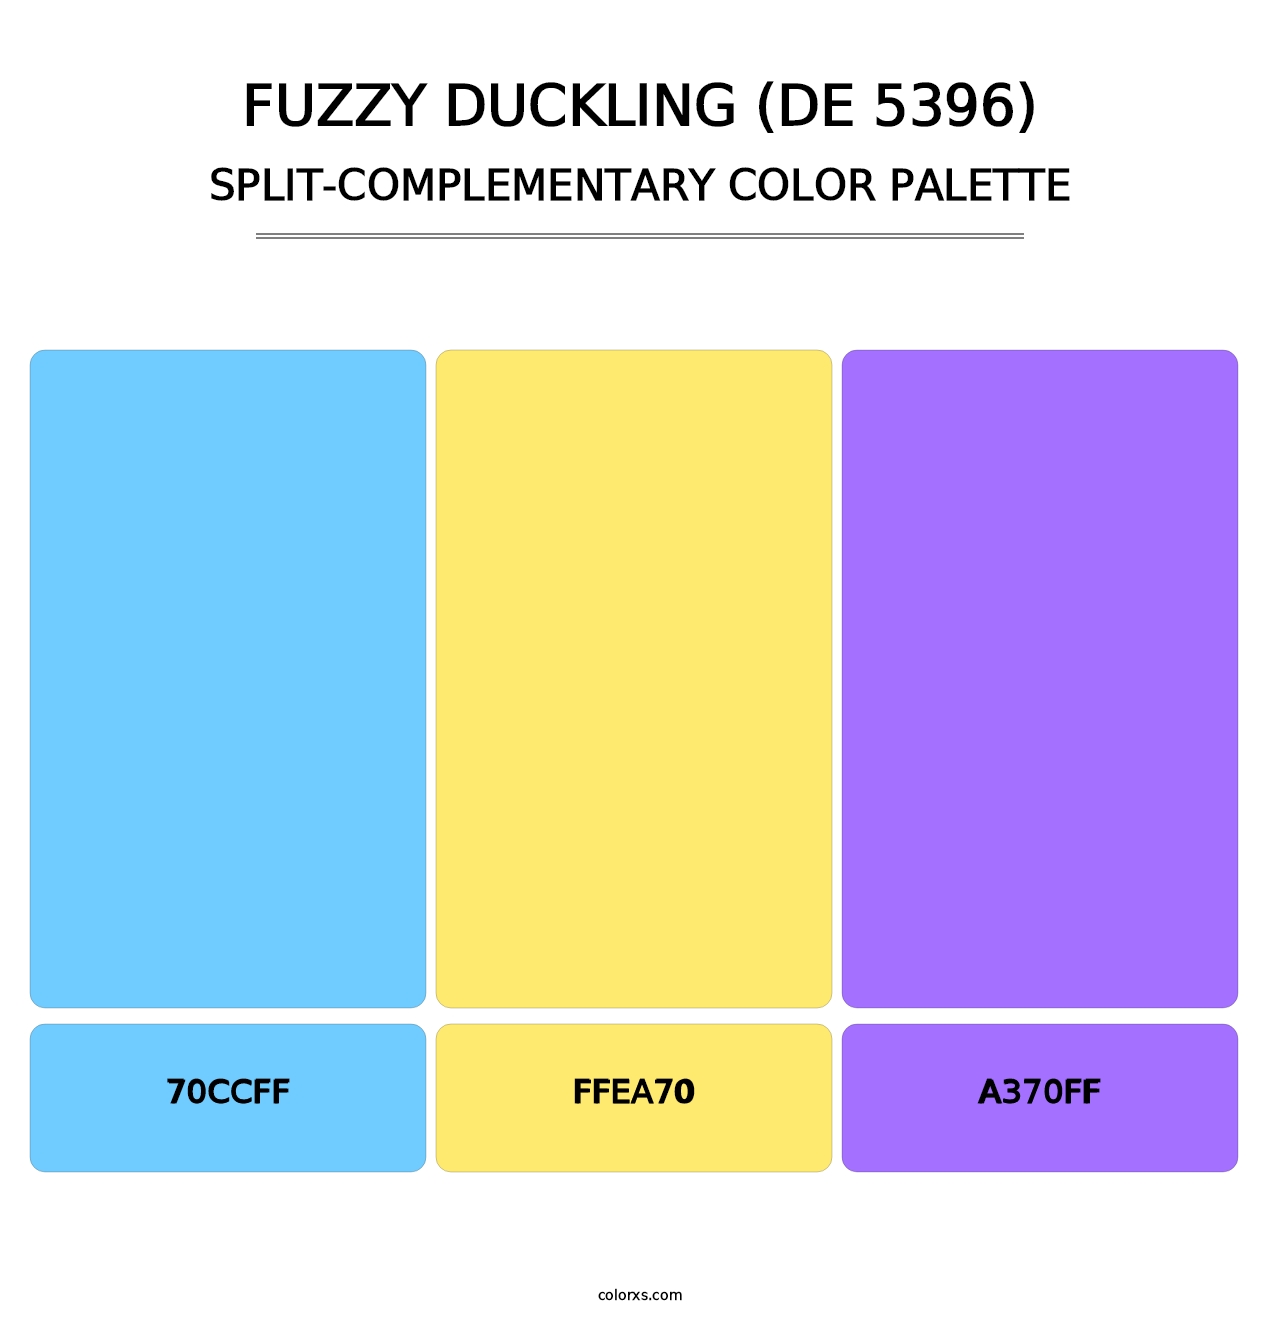 Fuzzy Duckling (DE 5396) - Split-Complementary Color Palette